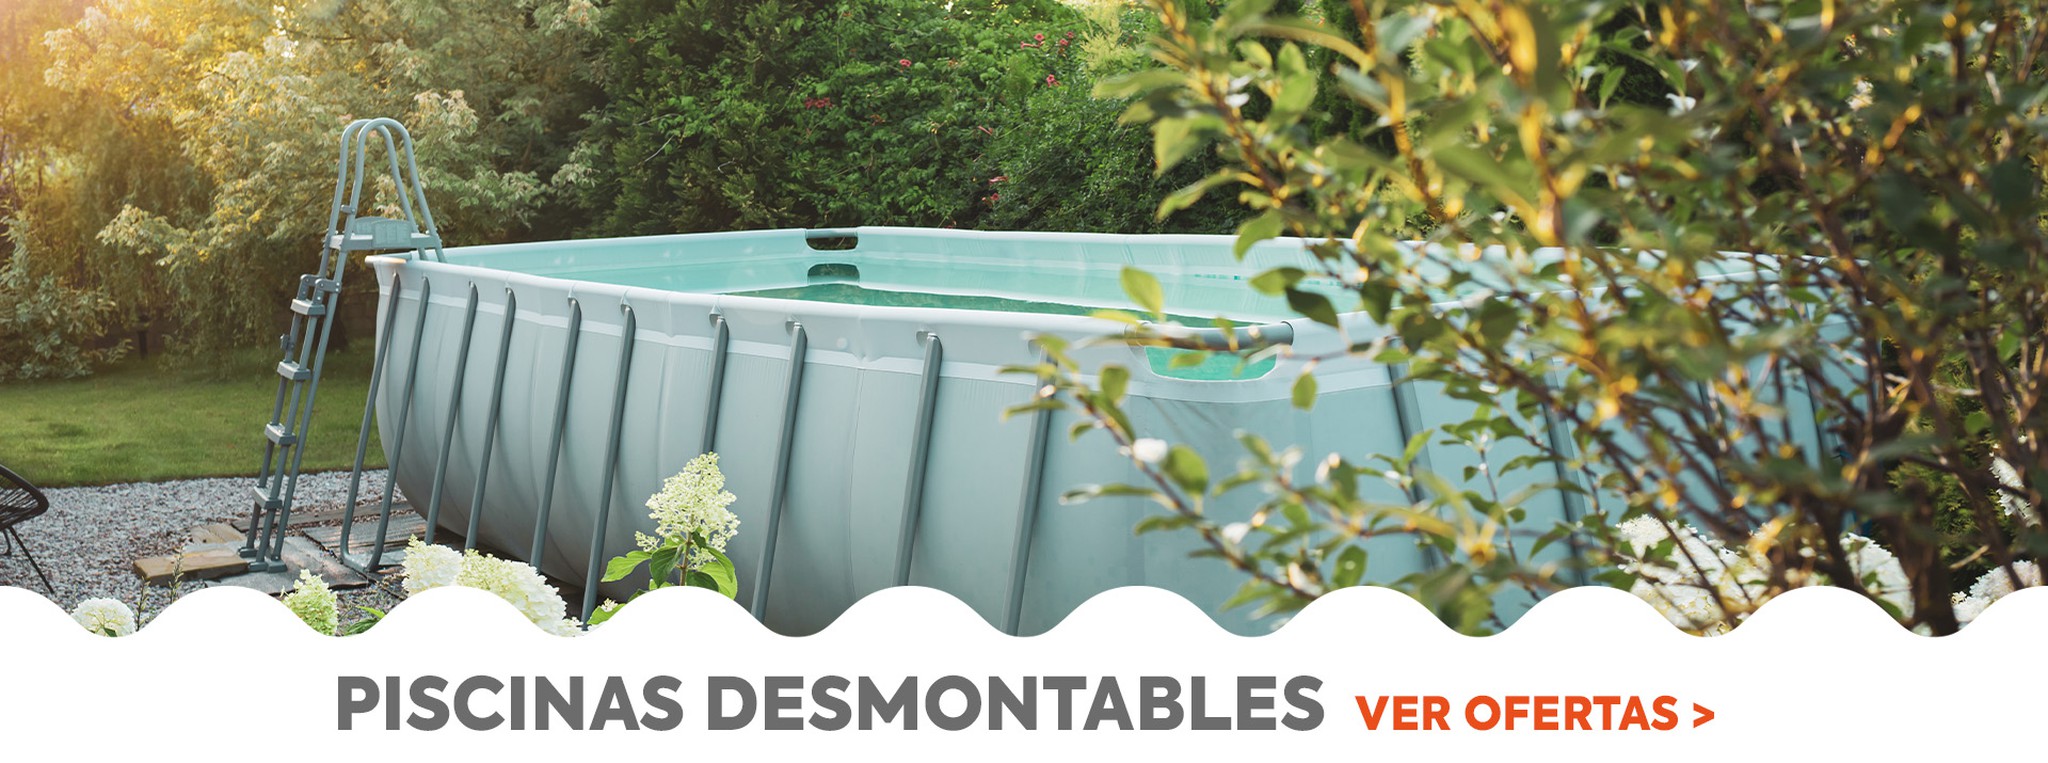 Descubre nuesta gama de piscinas desmontables al mejor precio para horas de diversión en tu jardín este verano.